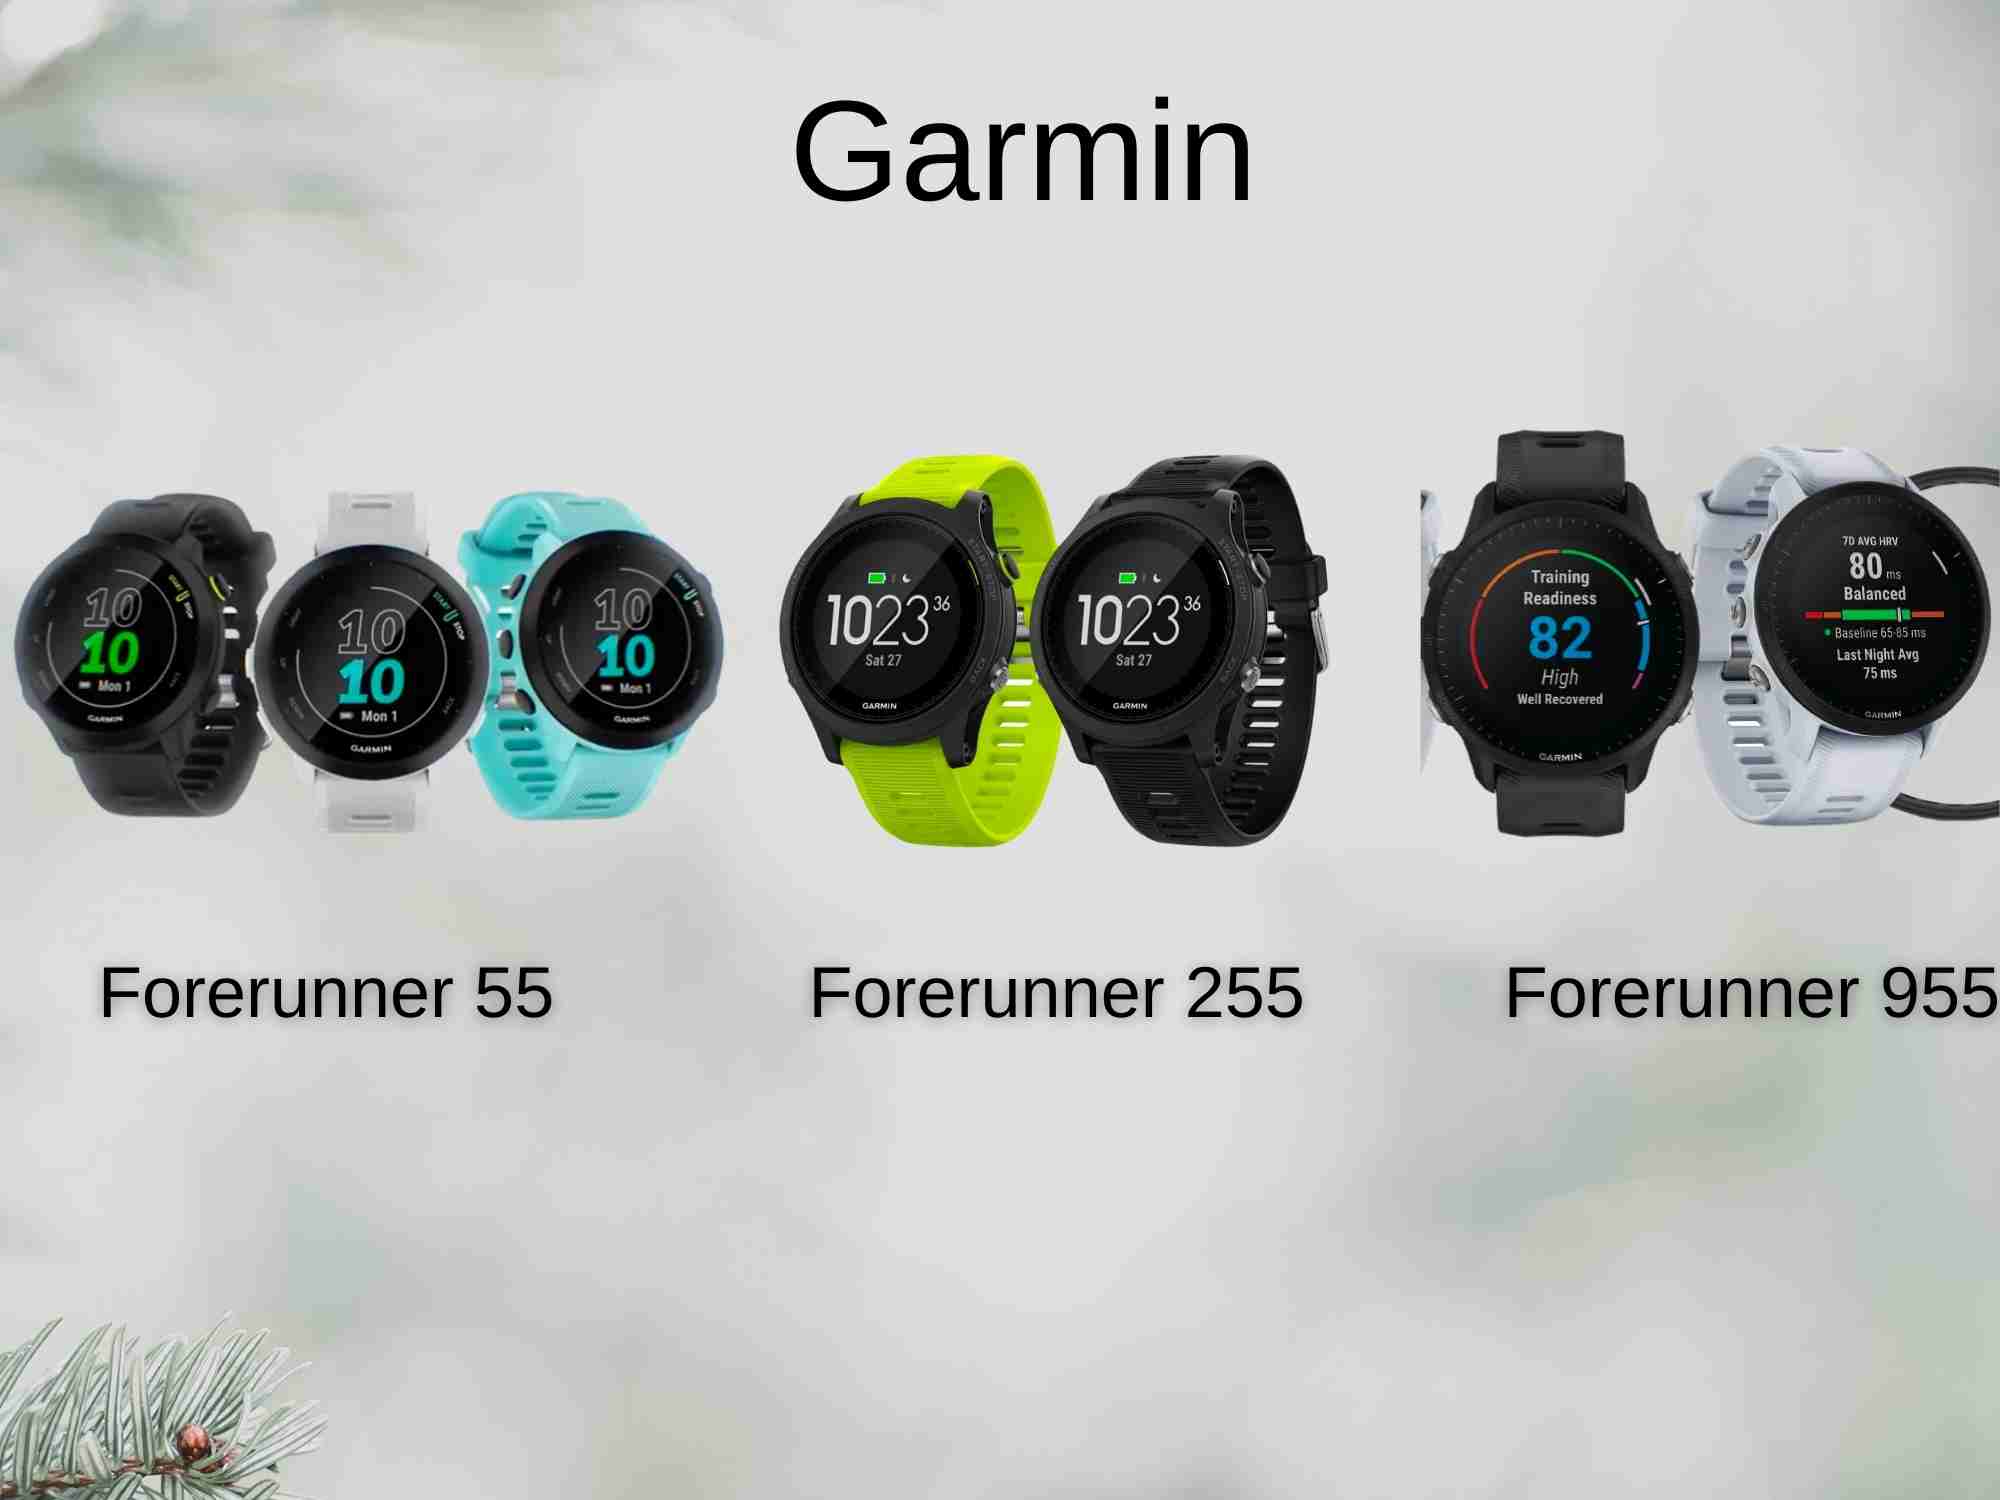 Gift Ideas For Runners: Garmin Running Watches